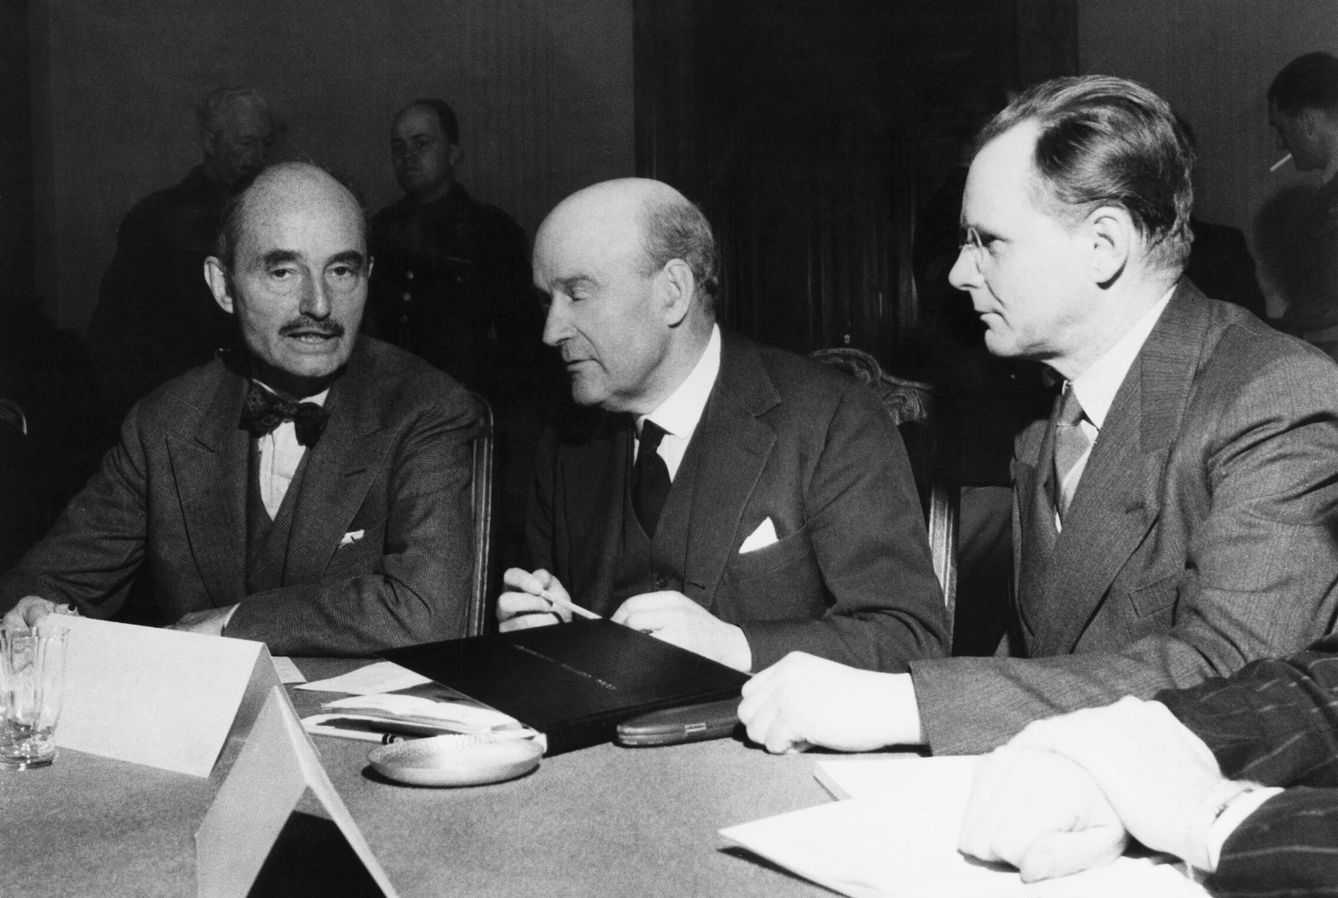 De izquierda a derecha, el juez Francis Biddle, representante de EEUU, Lord Geoffrey Lawrence, el representante británico, y el general Iona Nikitchenko, el representante soviético en un encuentro informa de jueces del Tribunal Militar de Núremberg, en Berlín en octubre de 1945.